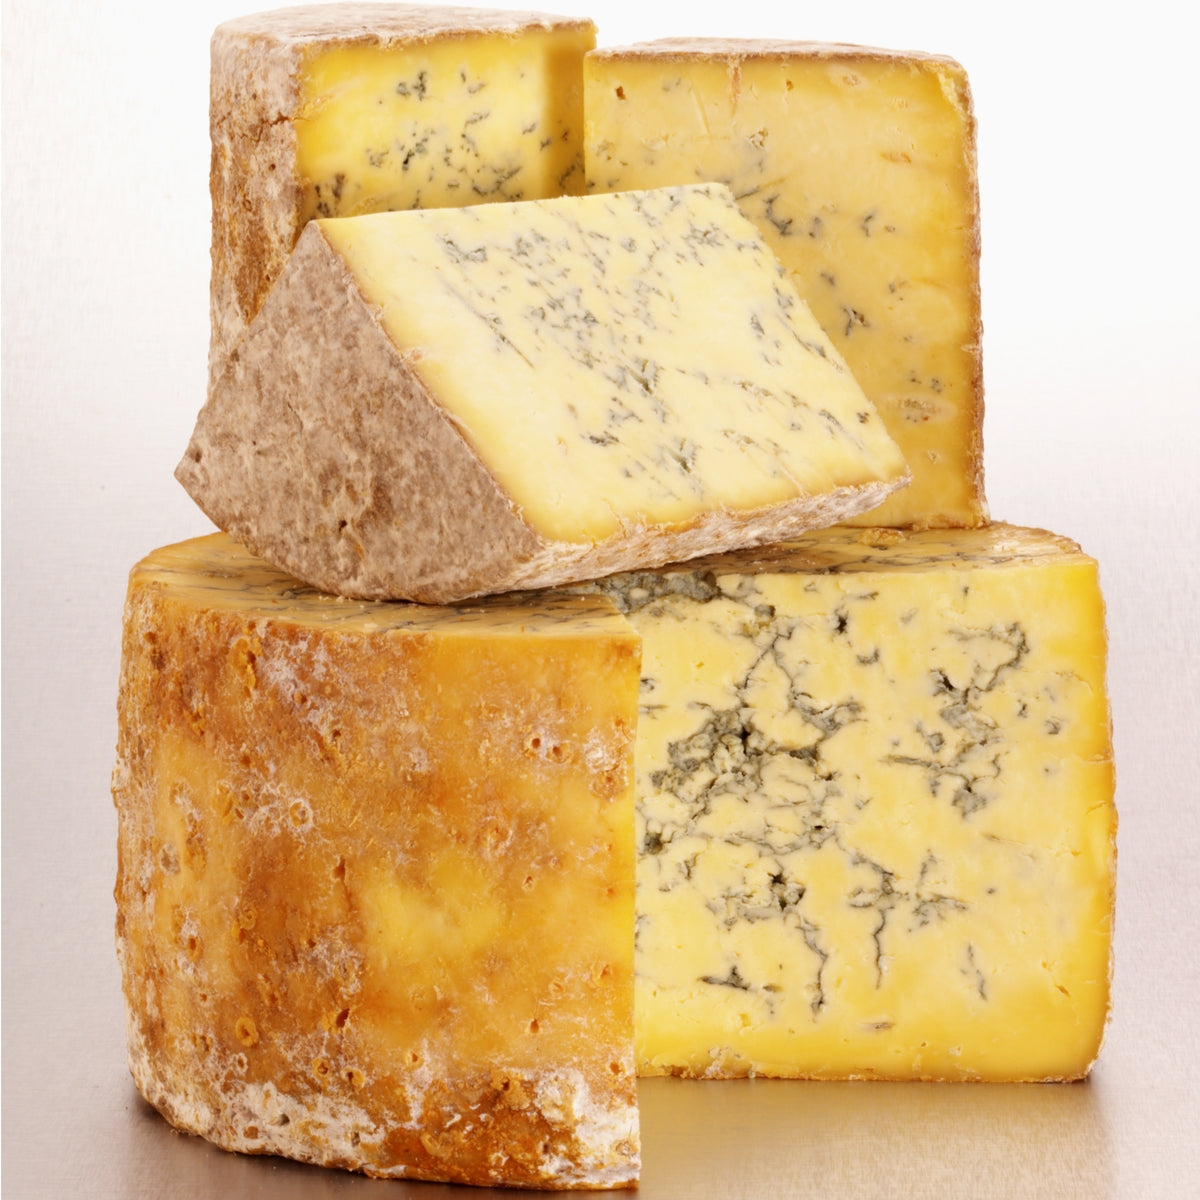 Cheese - Stilton 8 oz